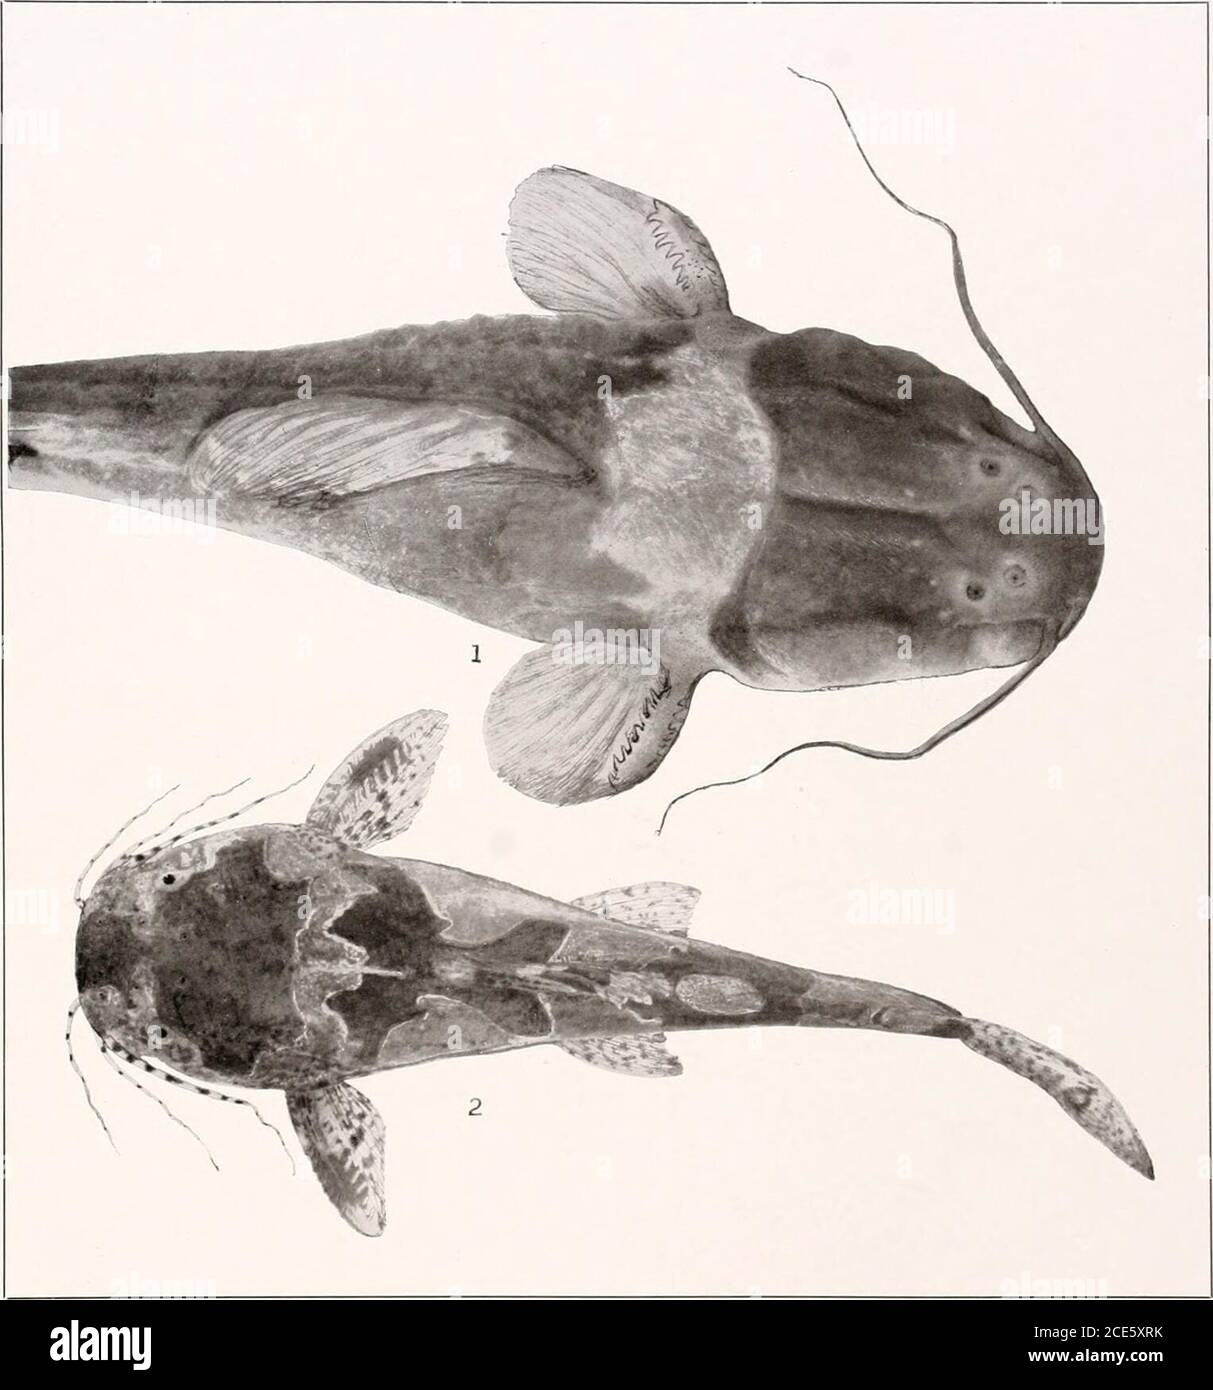 . Los peces de agua dulce de la Guayana Británica, incluyendo un estudio de la agrupación ecológica de especies y la relación de la fauna de la meseta con la de las tierras bajas . o o zz z HO t—t H o Z z&lt; sz HO ao o 3 W Memorias Carnegie Museum, Vol. V. Plate XII. Brachyglanis phalacra Eigenmanx. (Tipo.) 2.5 mm. a dorsal. No 1071. 2. Microglanis pcecilus Eigex- maxx. (Tipo.) 37 mm. No 1676. X w E-&lt; o in ow s ps &lt; ps Foto de stock